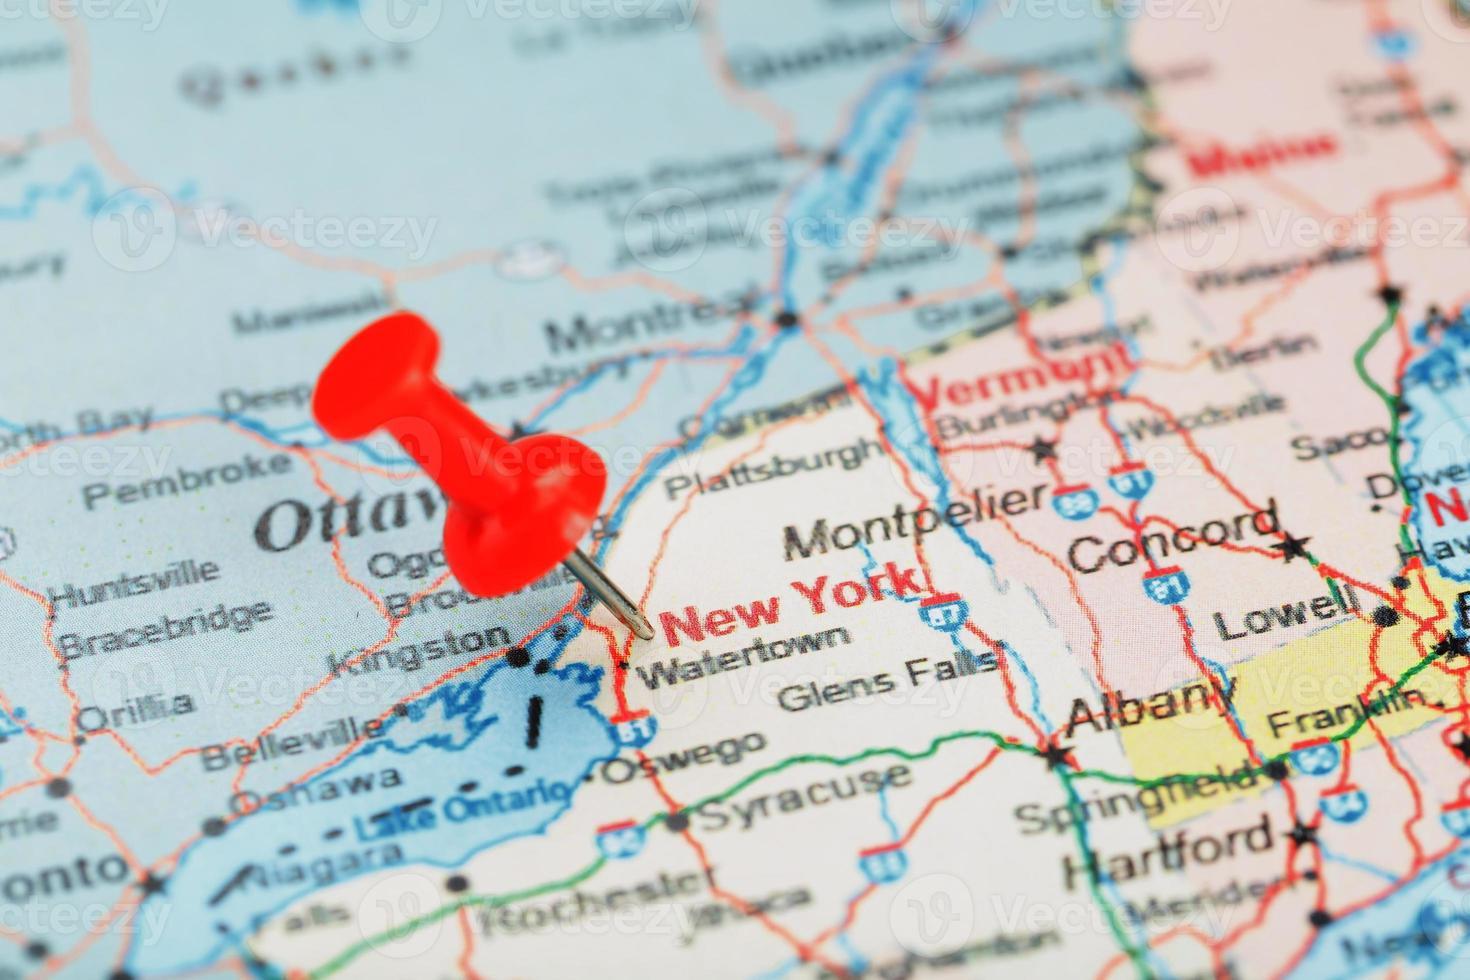 agulha clerical vermelha em um mapa dos eua, sul de nova york e a capital albany. feche o mapa do sul de nova york com red tack foto